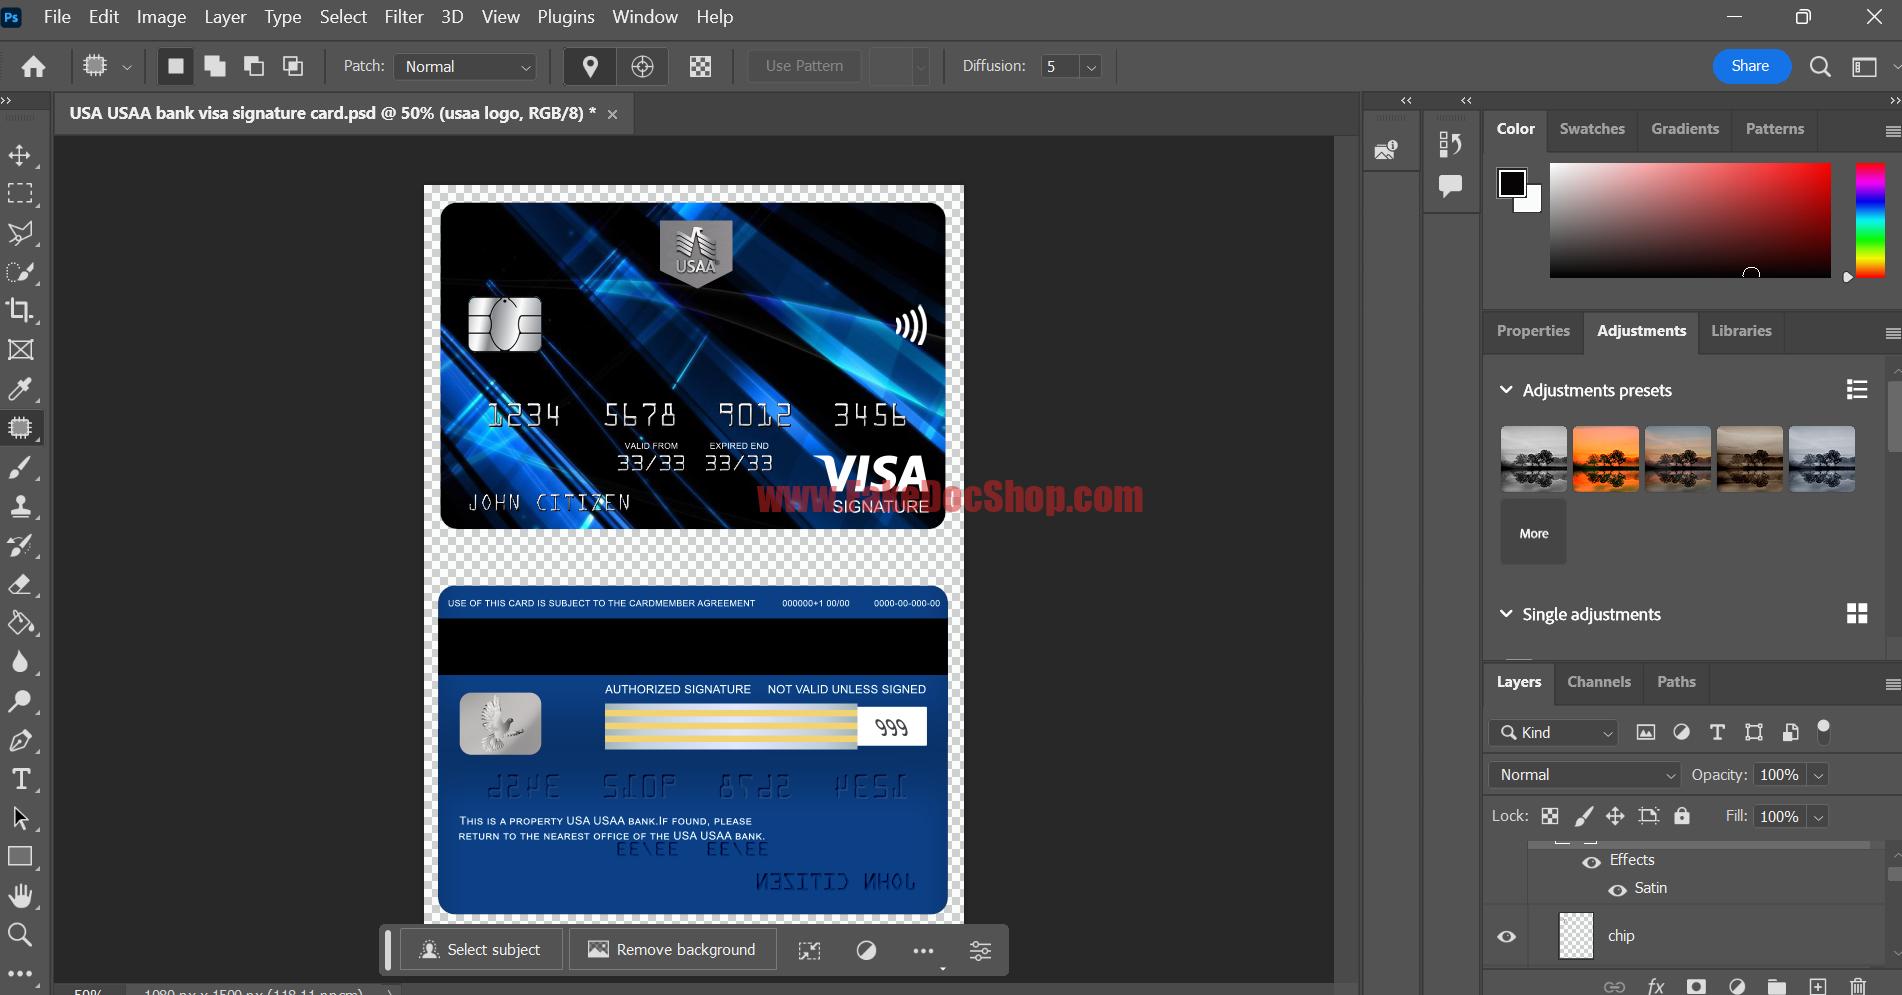 USA USAA Bank Visa Signature Card PSD Template - Fakedocshop